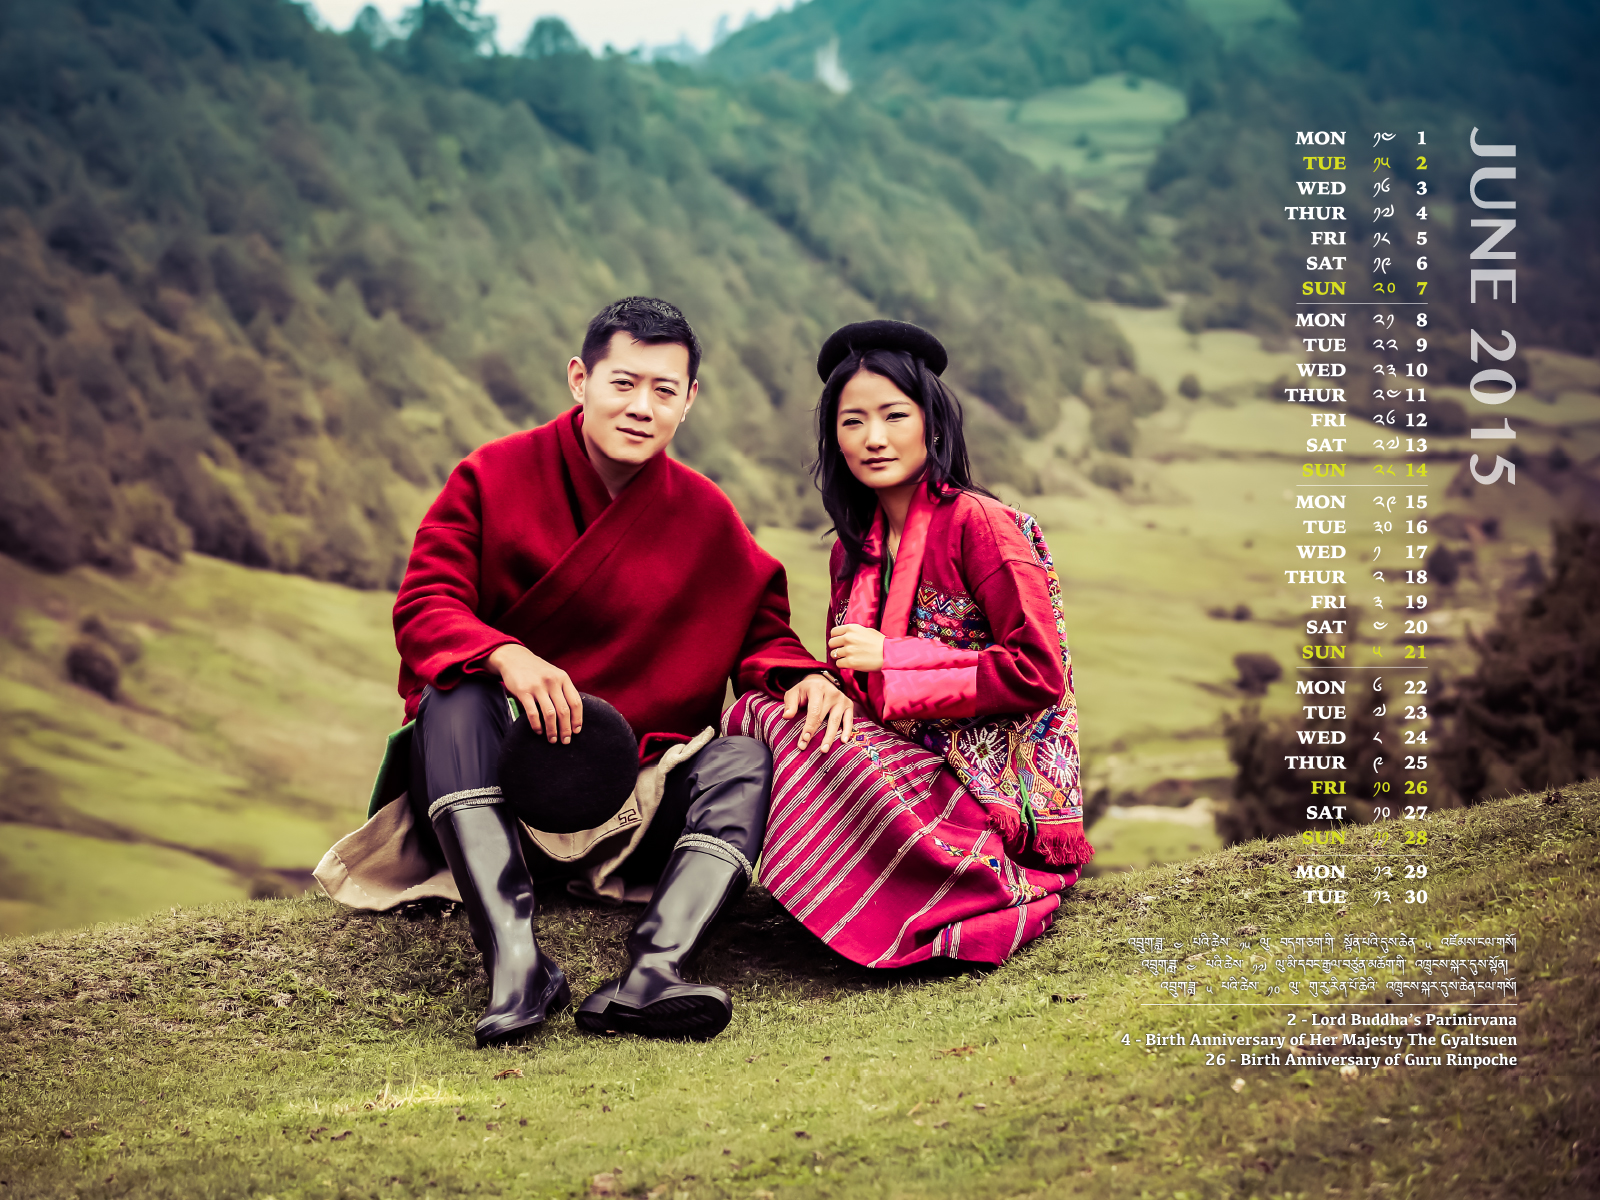 King-and-Queen-of-Bhutan-June-2015.jpg